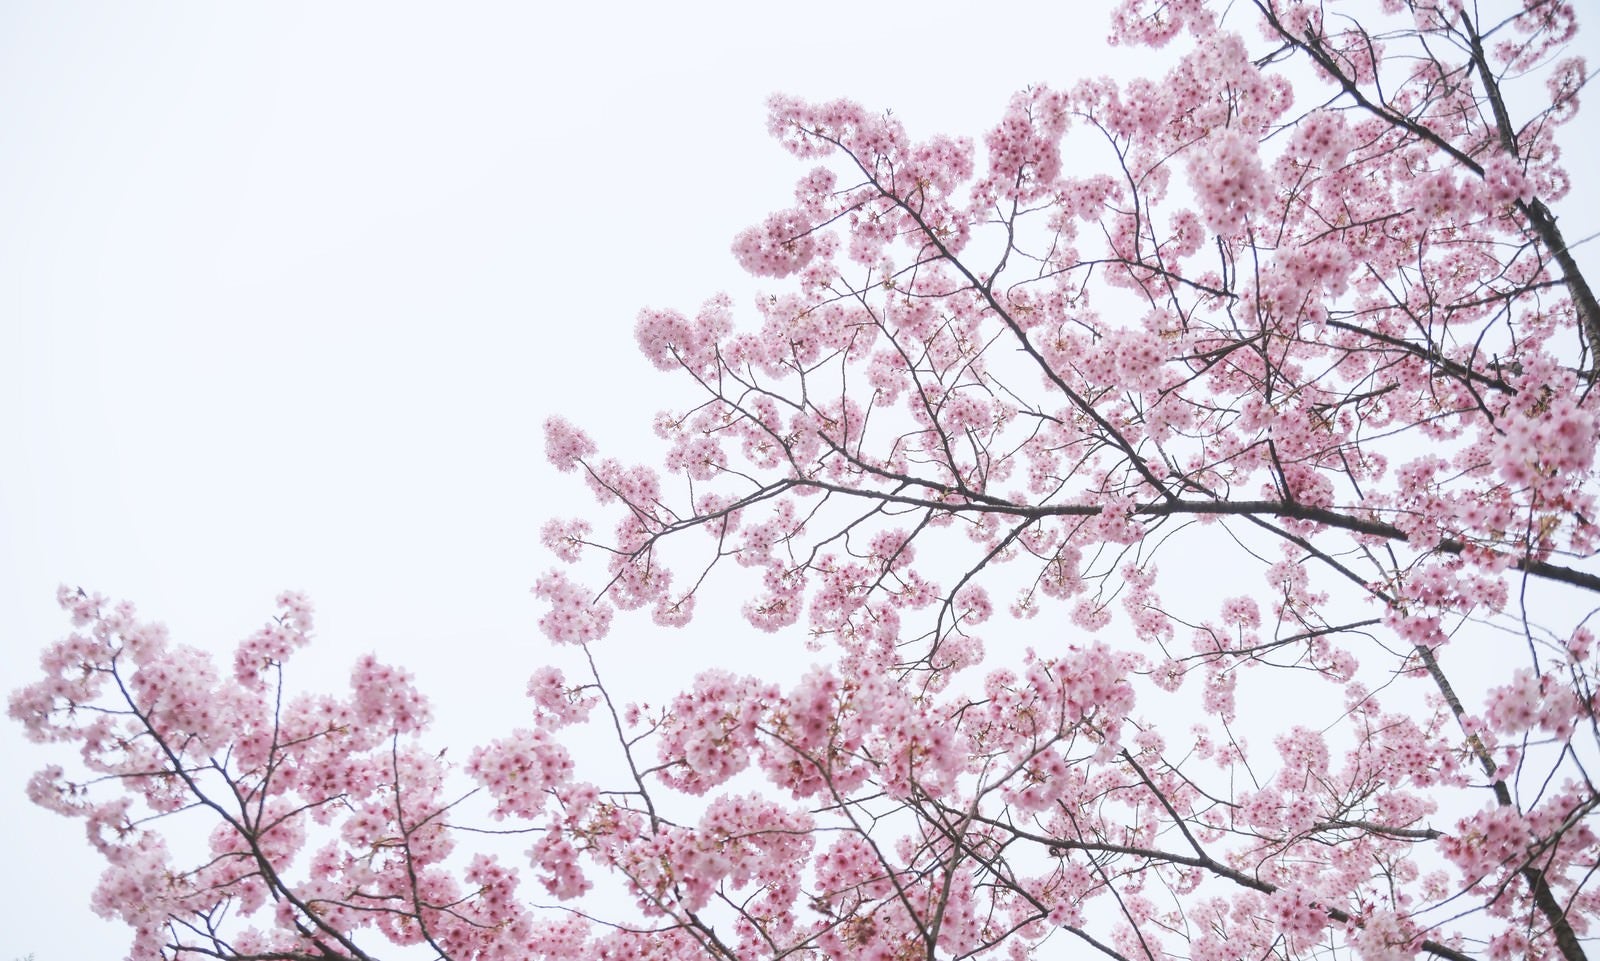 「満開の八重紅桜」の写真